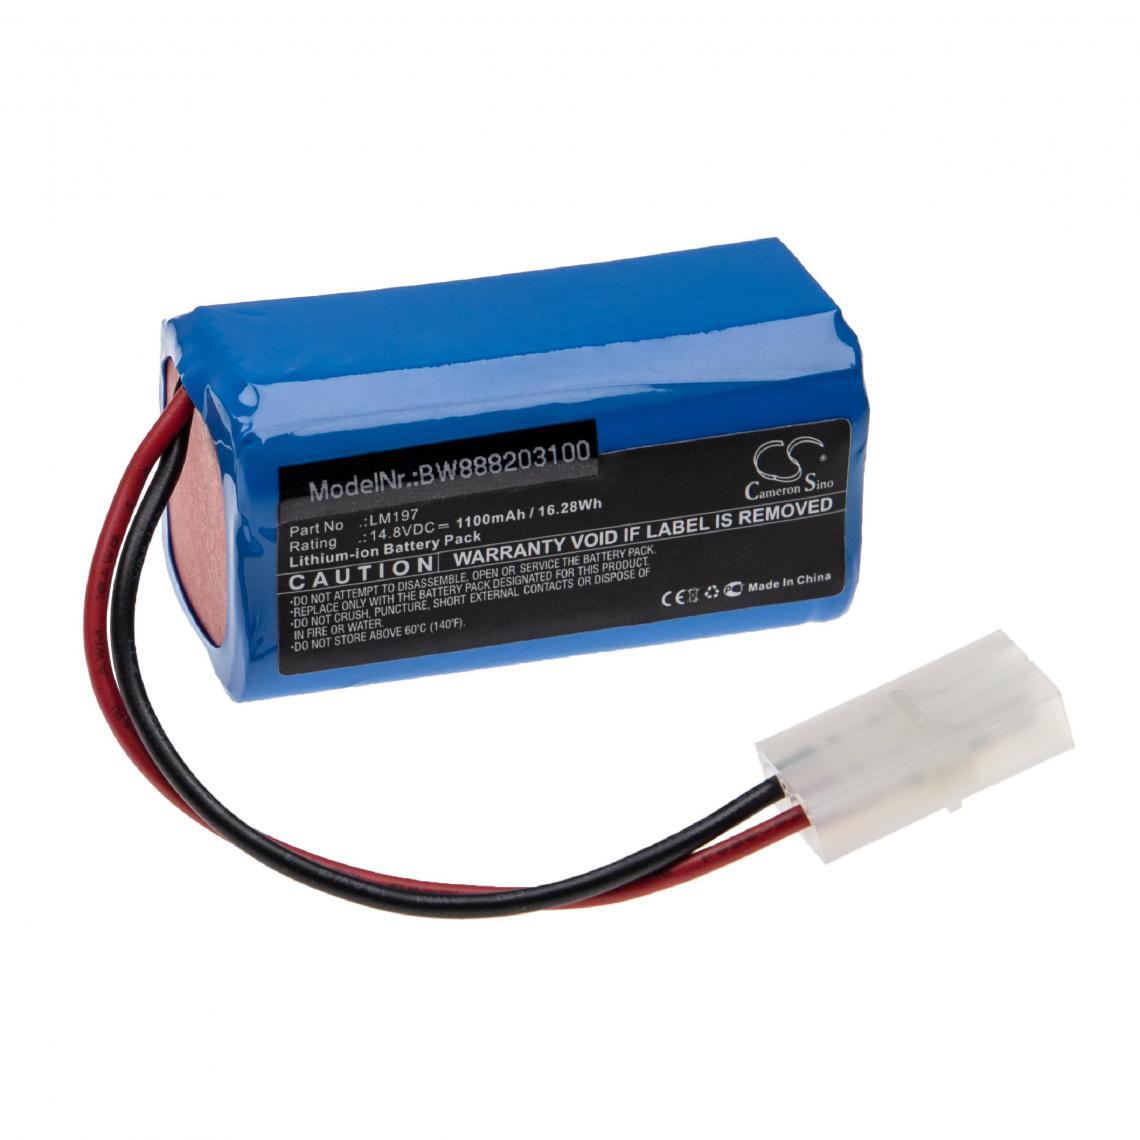 Vhbw - vhbw Batterie compatible avec Spring ECG-903A appareil médical (1100mAh, 14,8V, Li-ion) - Piles spécifiques